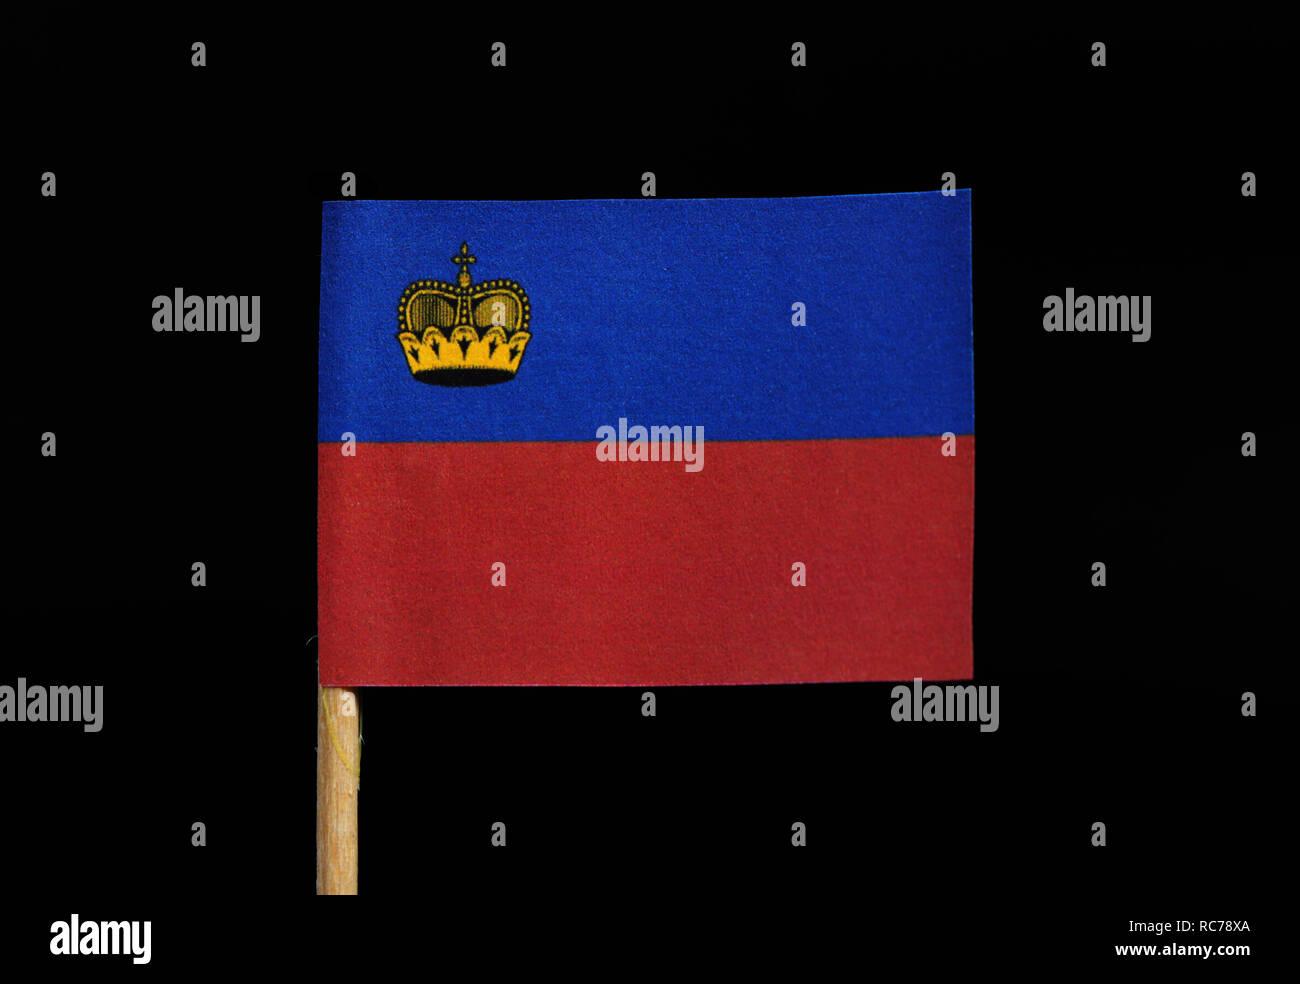 Eine offizielle Flagge Liechtensteins auf Zahnstocher auf schwarzem Hintergrund. Horizontale bicolor von Blau und Rot; aufgeladen mit einer goldenen Krone im Kanton. Stockfoto